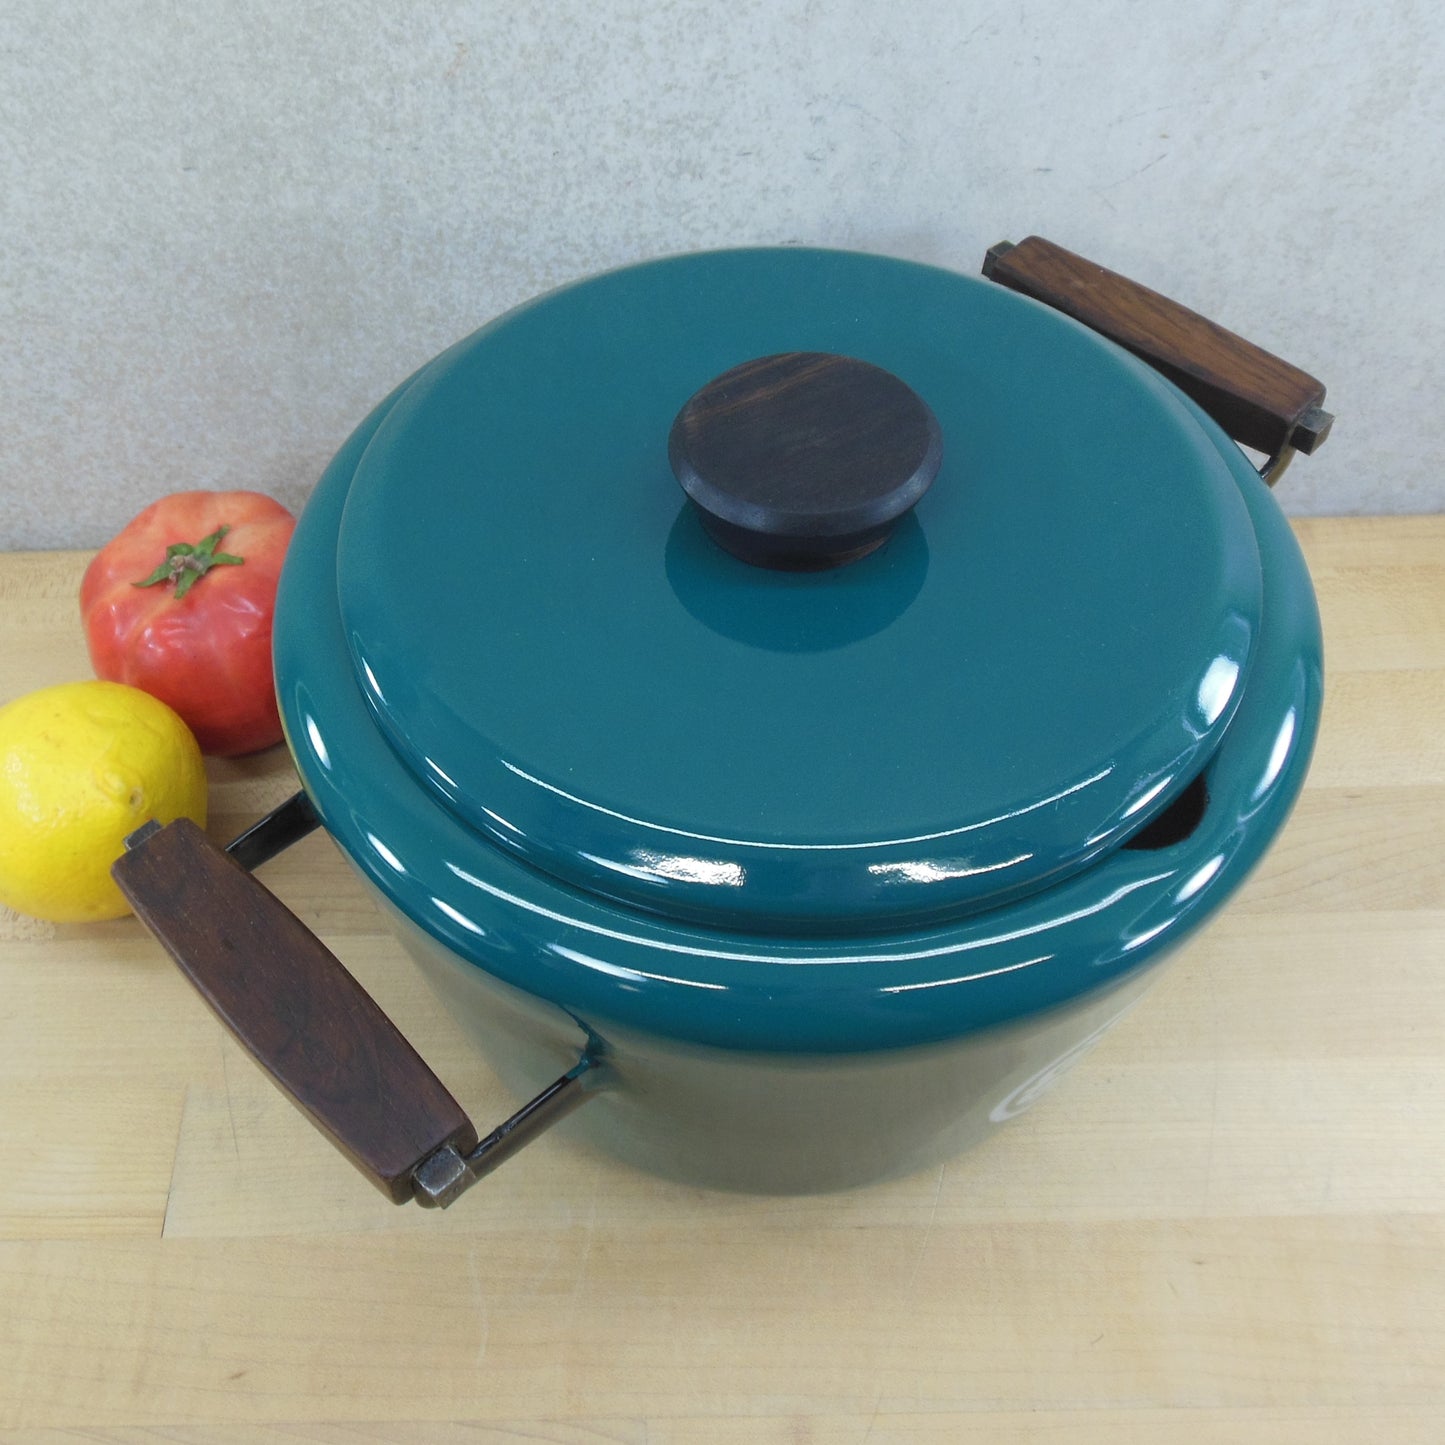 Unbranded Teal Green Enamelware 4 Quart Soup Pot Tureen Rosewood Handles Knob Vintage